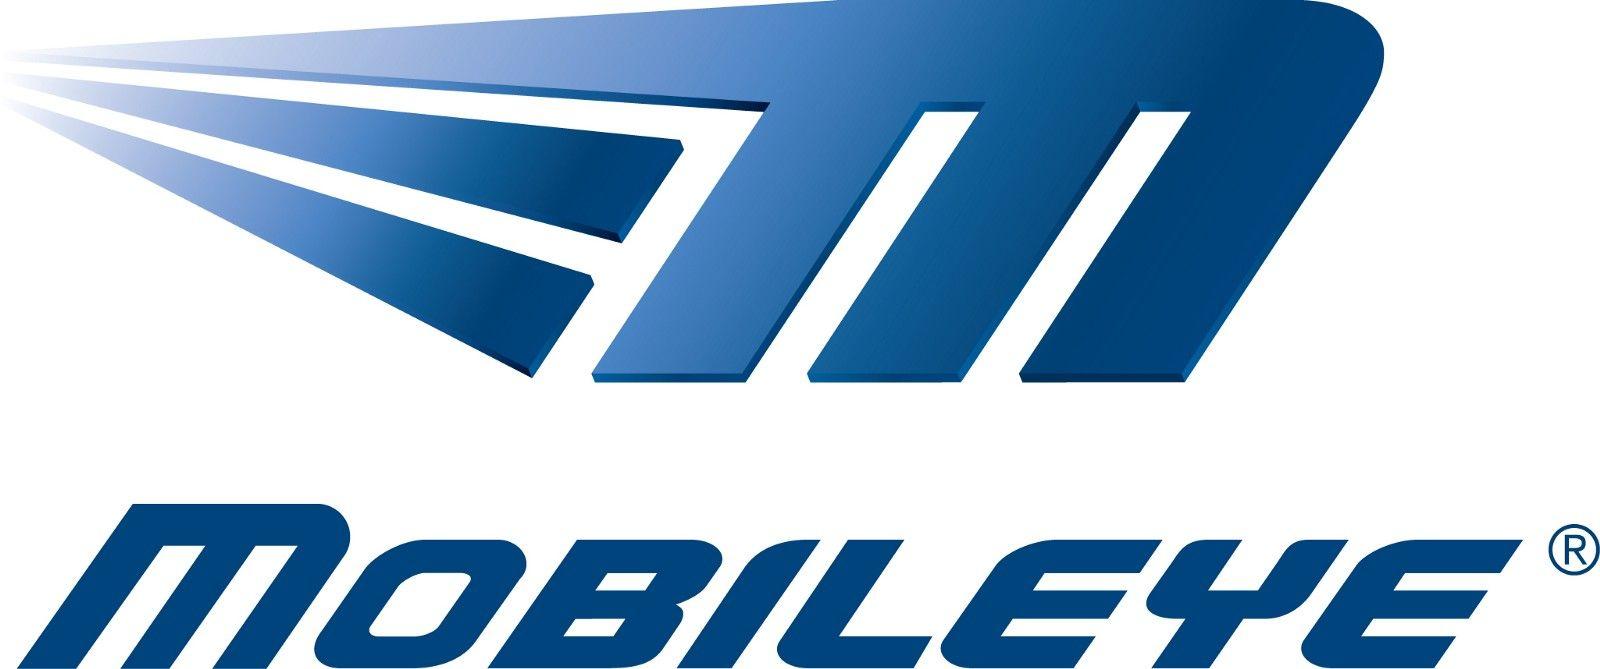 Intel Mobileye Logo - Intel Buys Mobileye